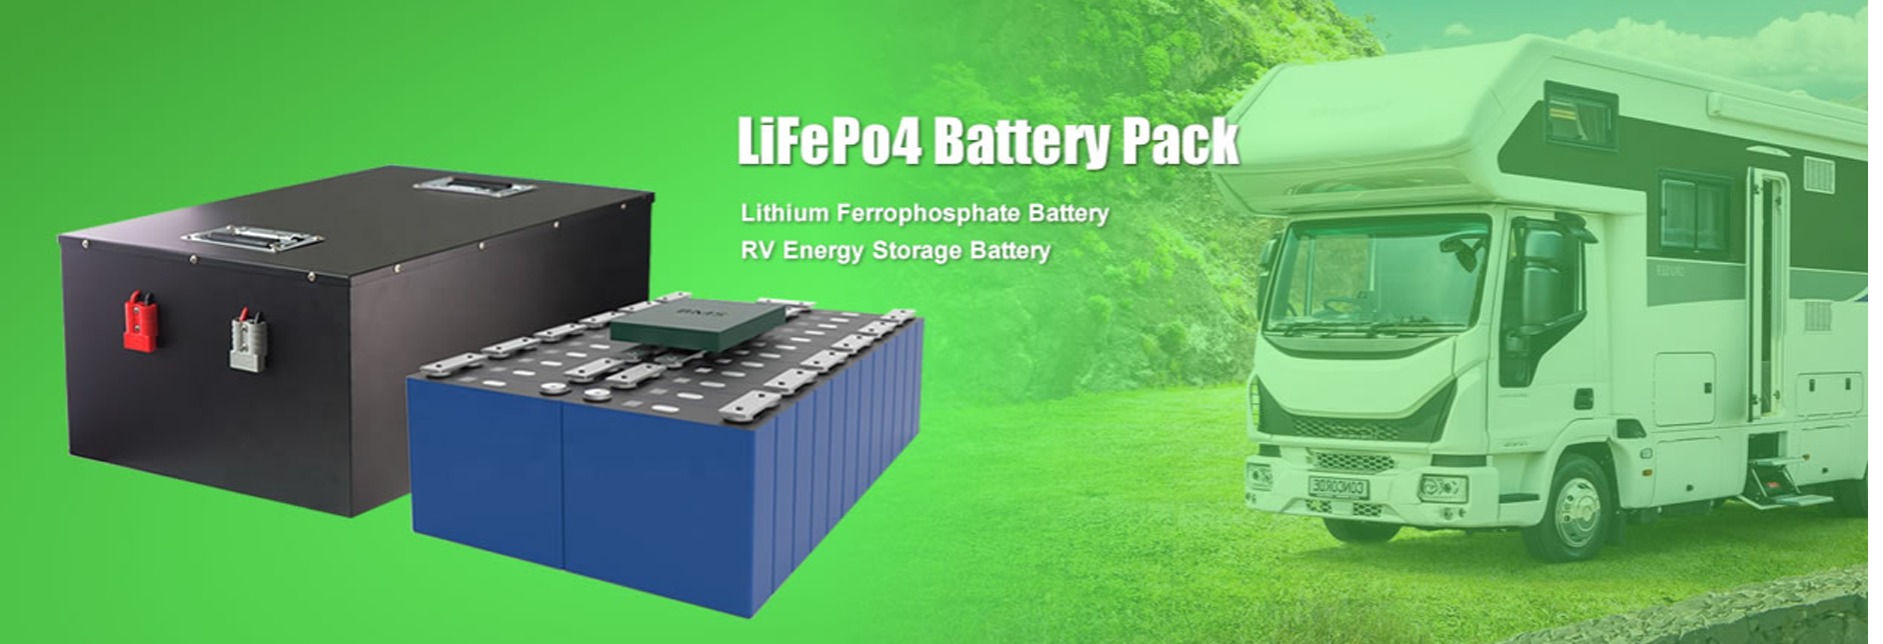 LiFePo4 Batter Pack